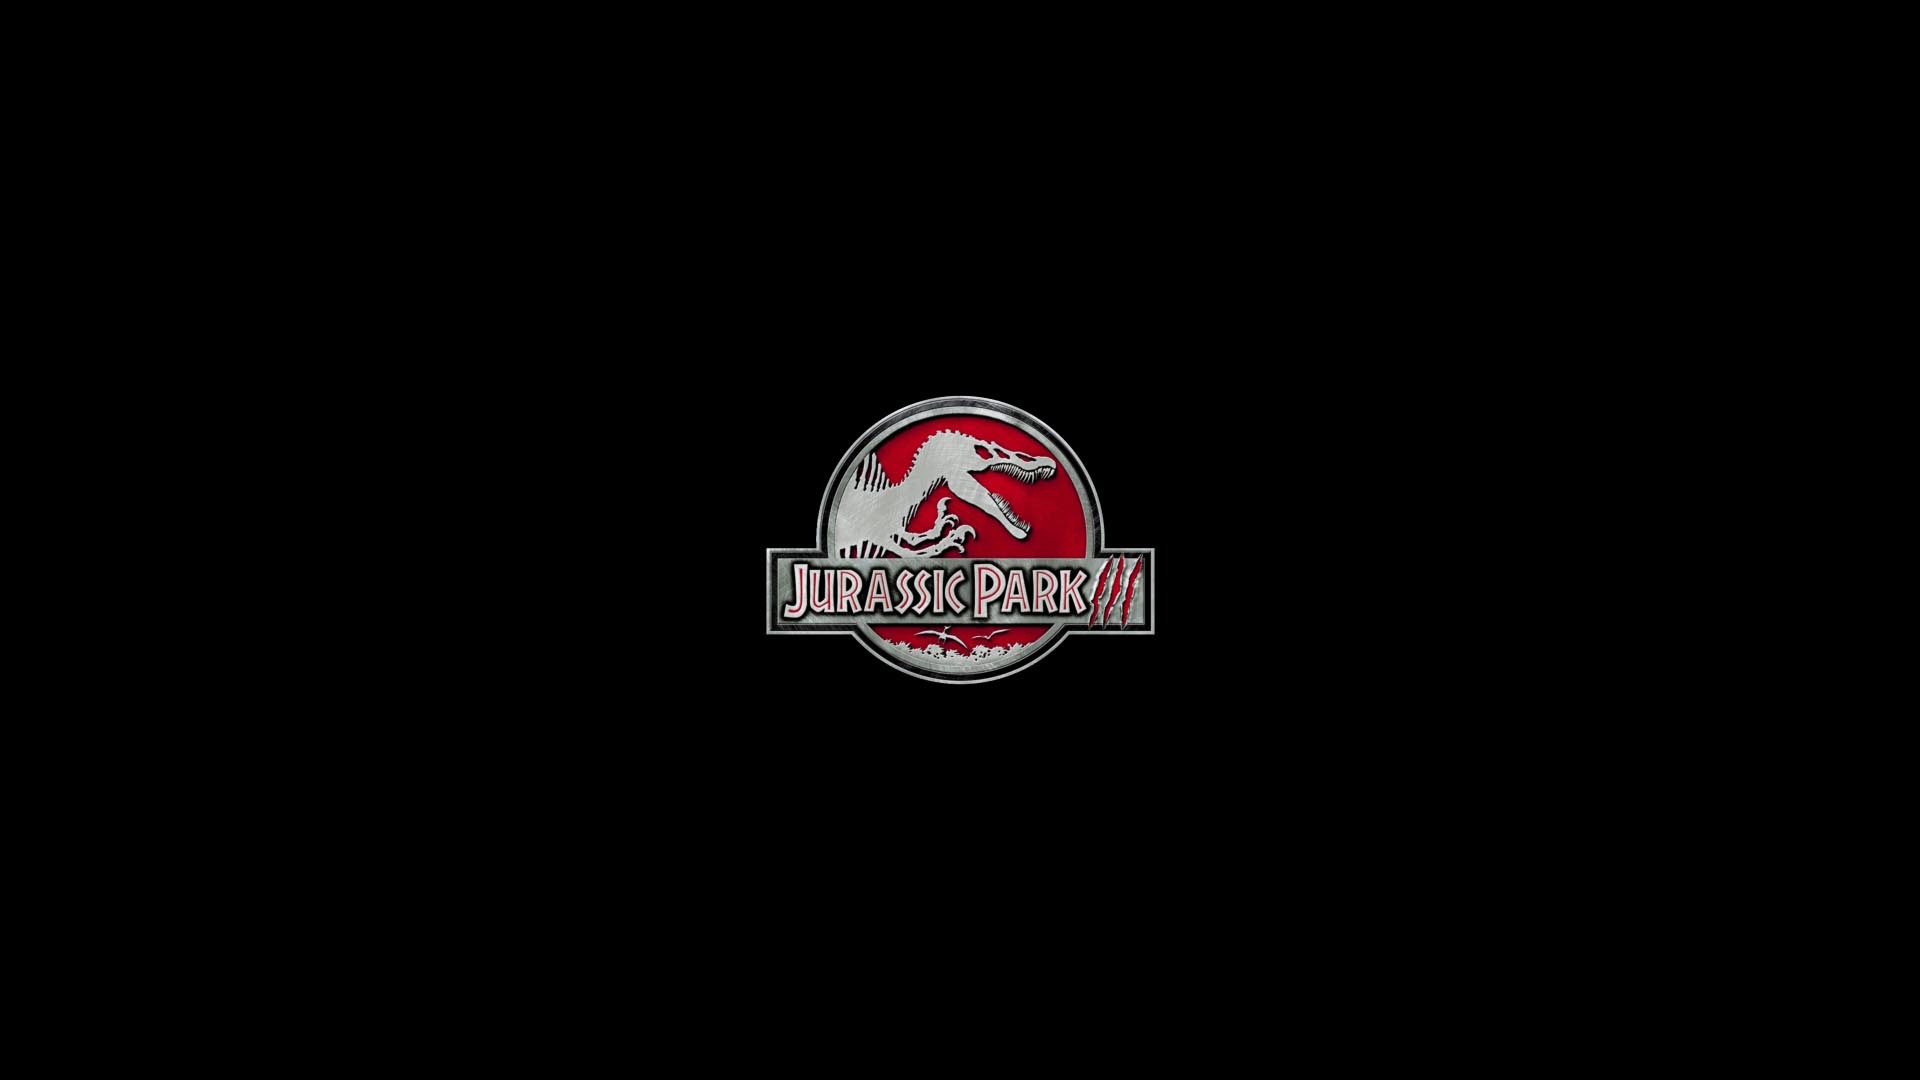 Laden Sie Jurassic Park Iii HD-Desktop-Hintergründe herunter